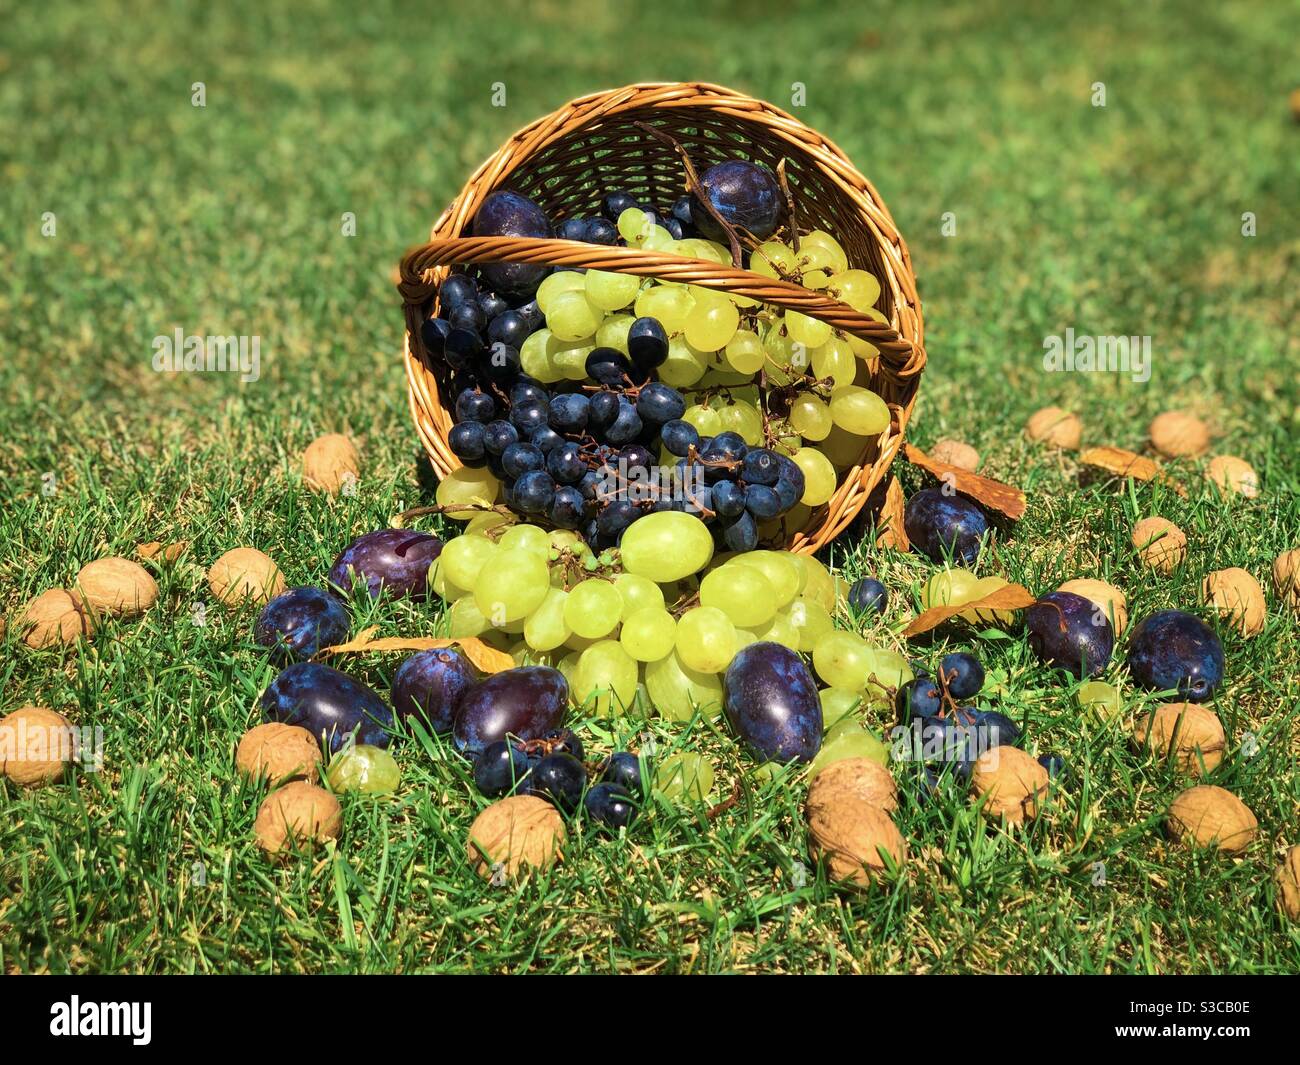 Cesto di legno versato riempito con prugne, noci, uva verde e nera Foto Stock